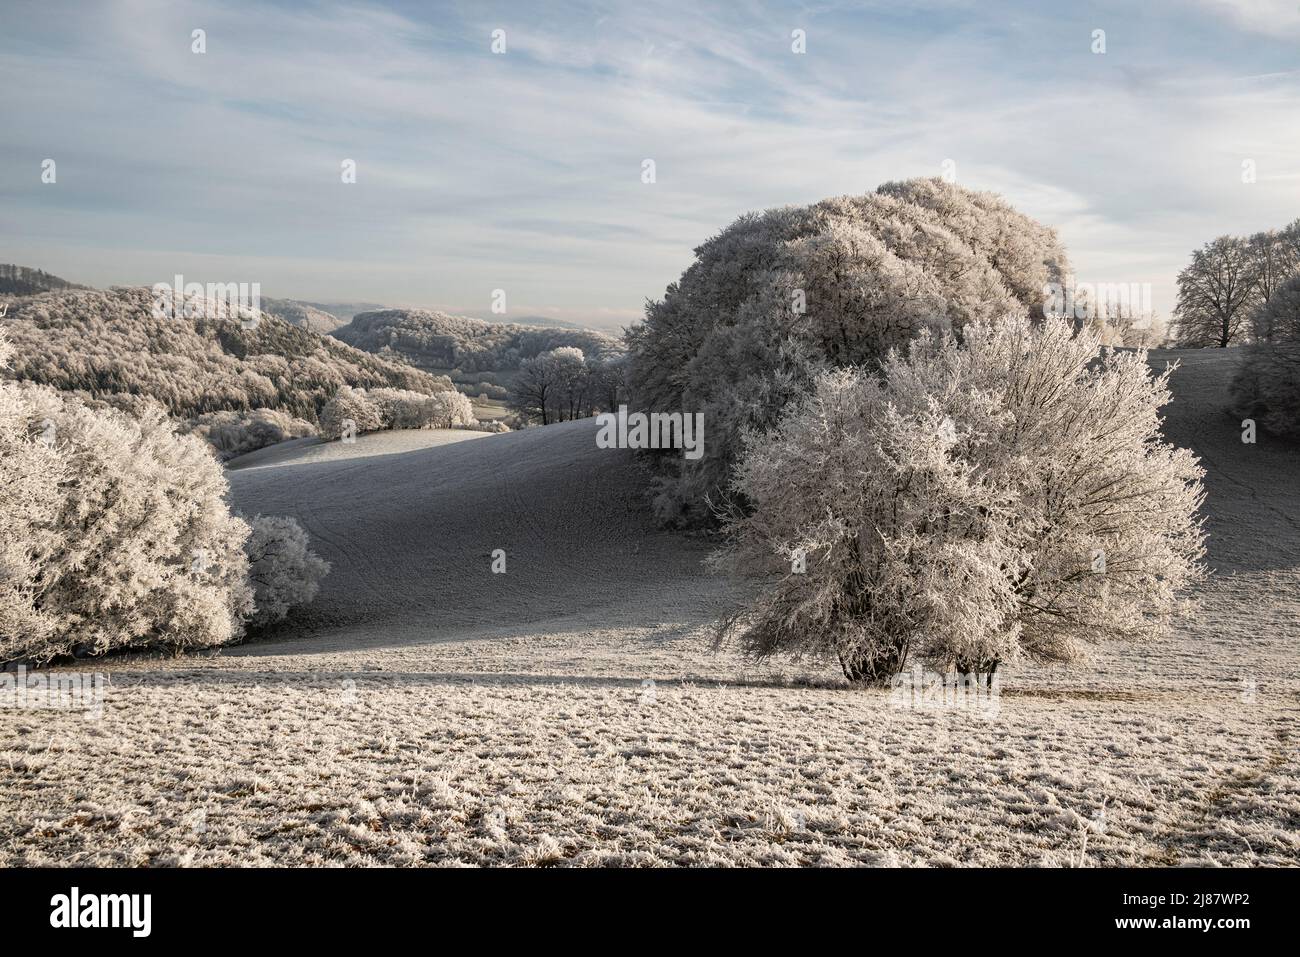 Scène rurale avec des arbres blancs dépolis sur les collines vallonnées de Rühler Schweiz, dans un beau paysage d'hiver, près de Golmbach, Weserbergland, Allemagne Banque D'Images